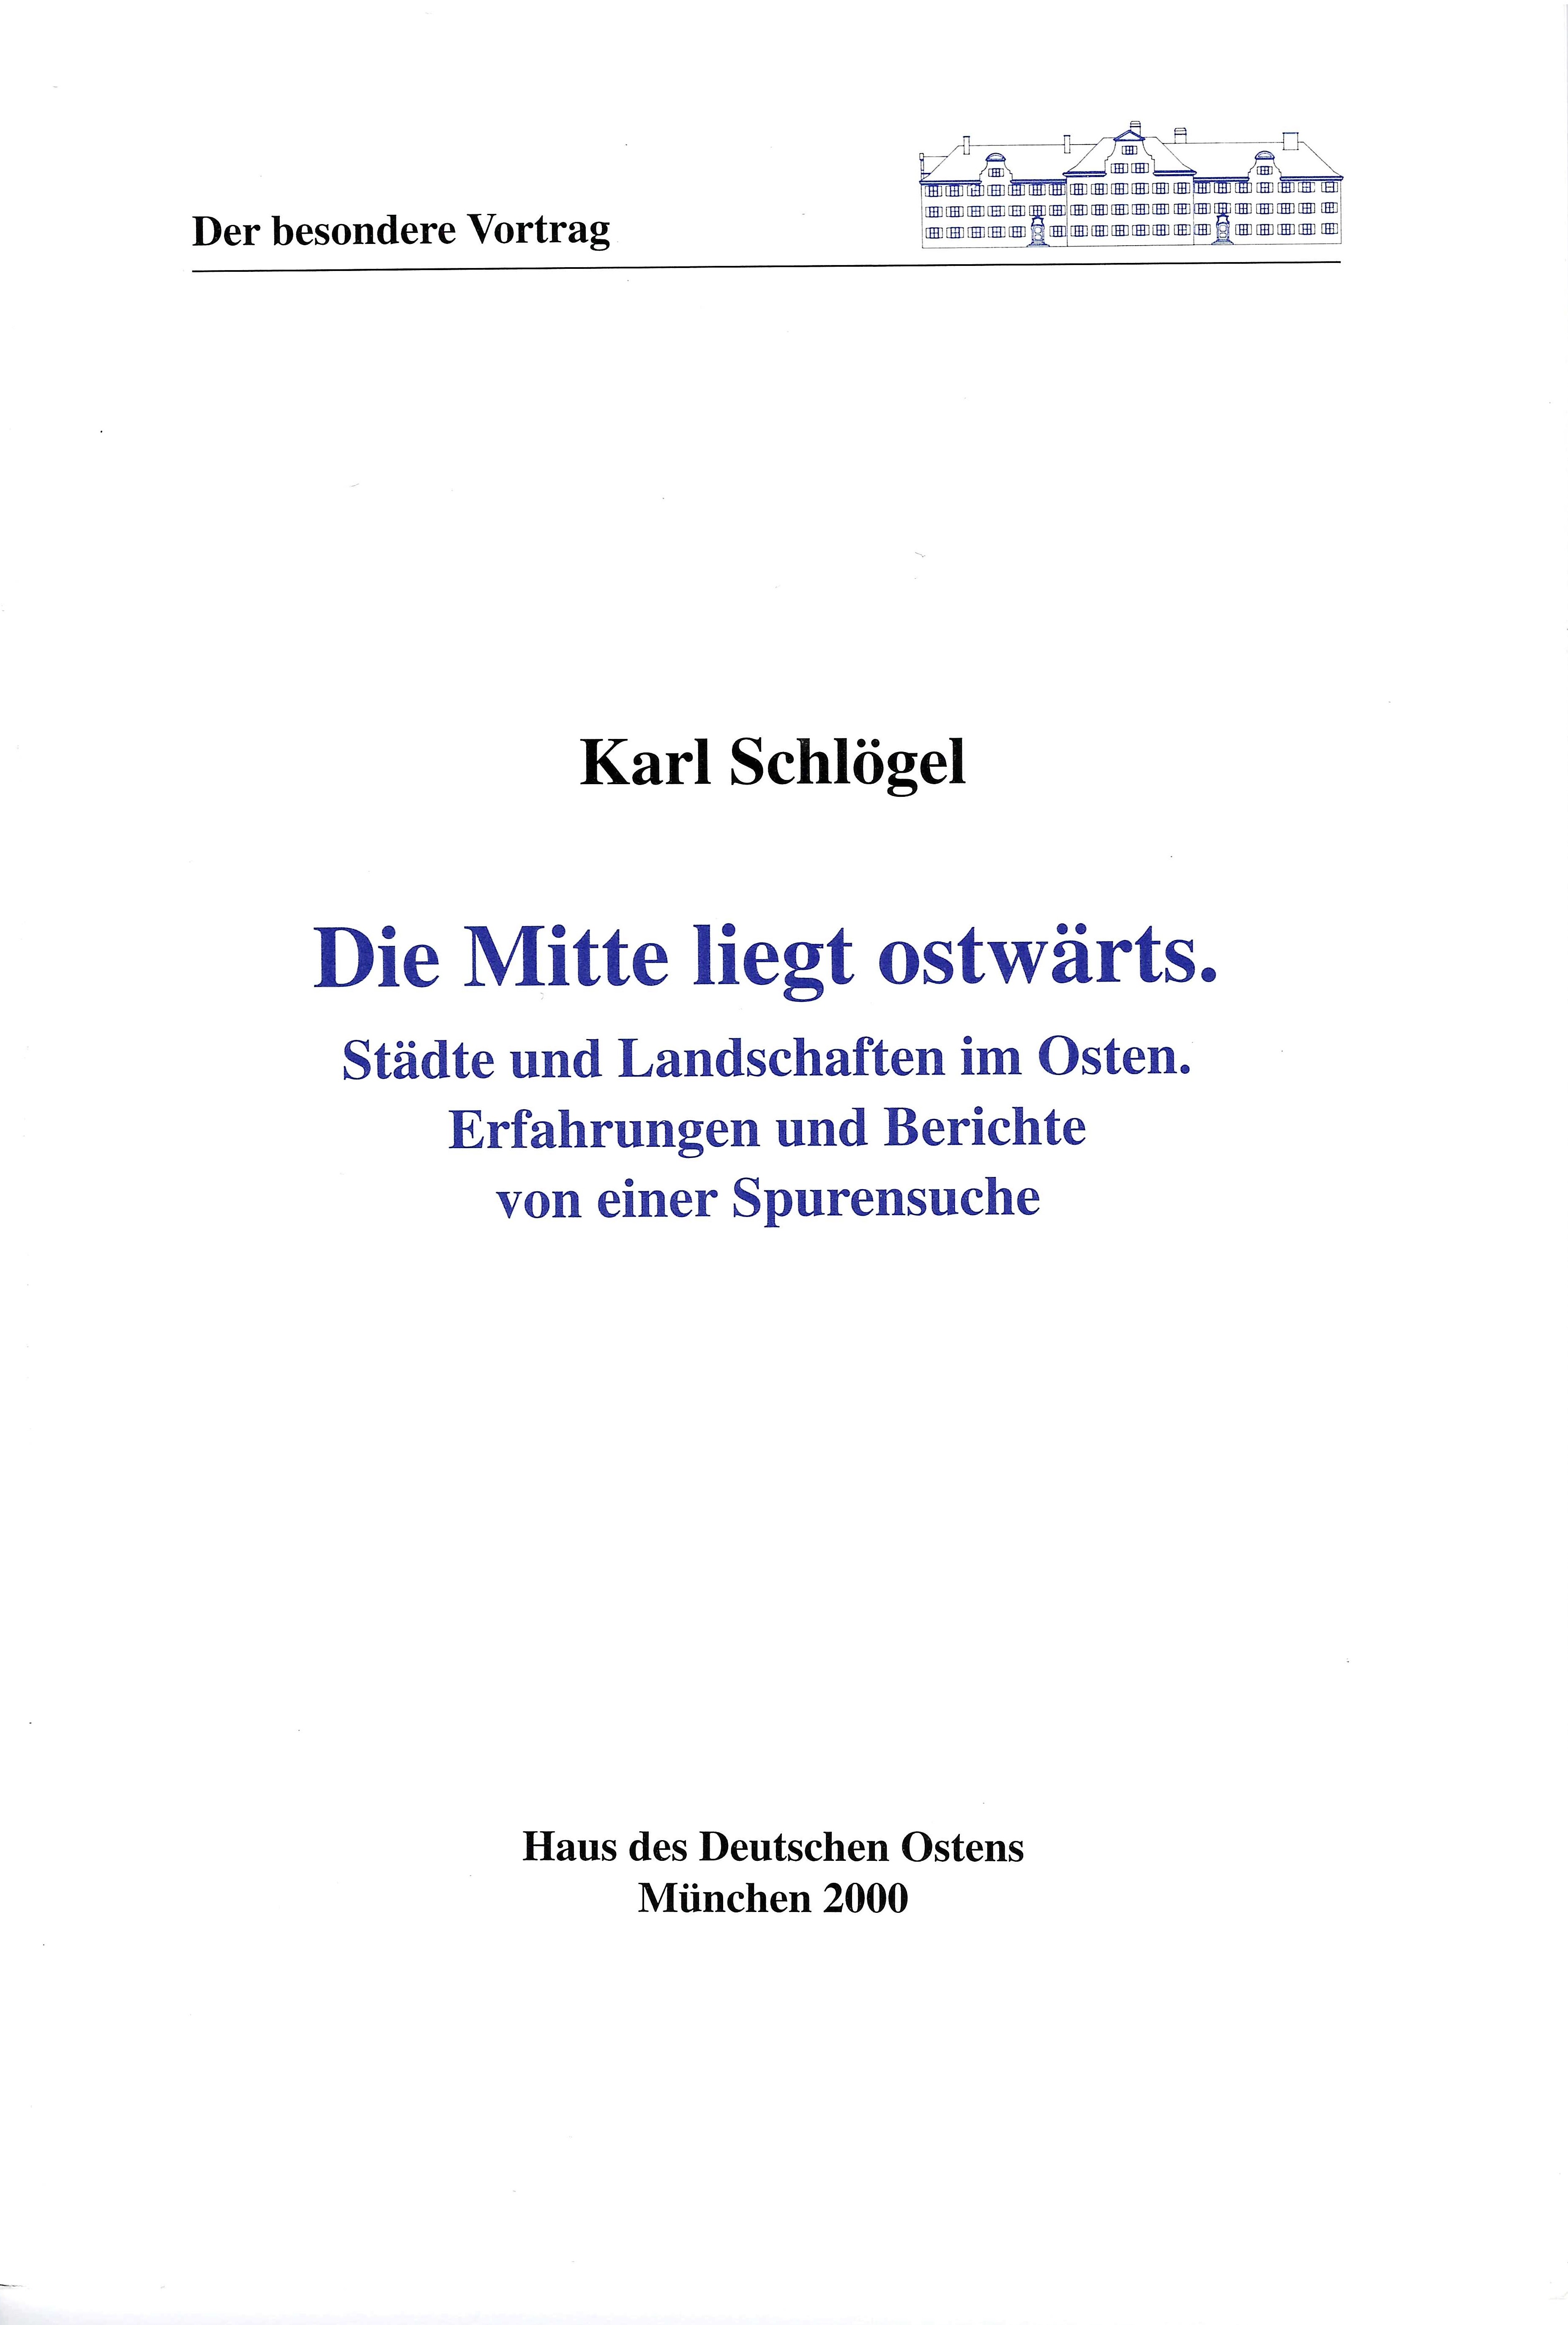 Karl Schlögel: Die Mitte liegt ostwärts